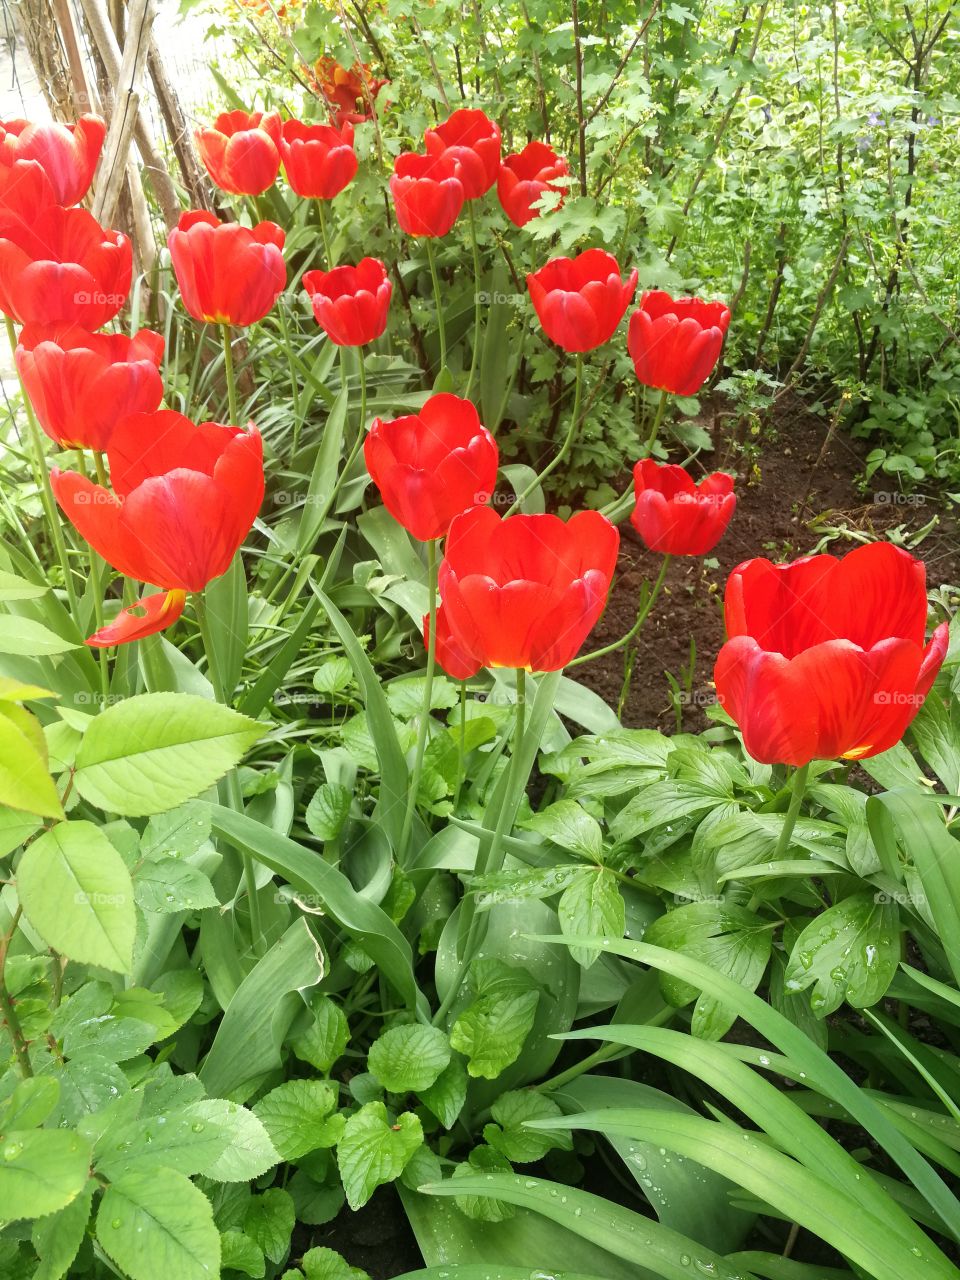 Red garden tulips